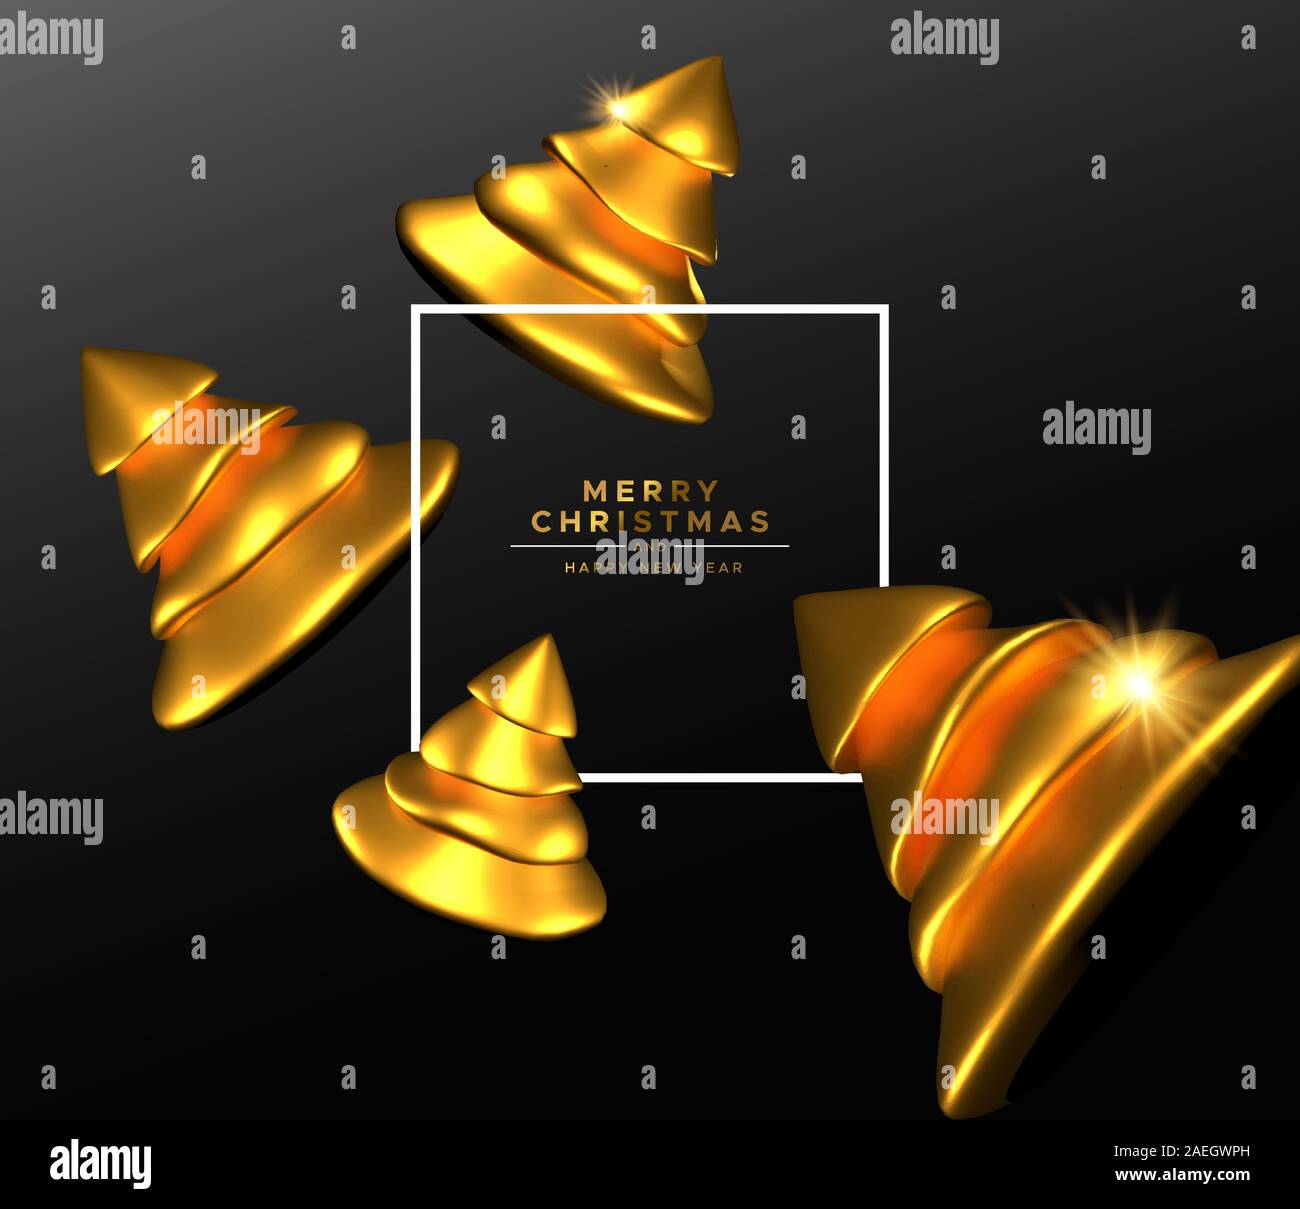 Frohe Weihnachten Frohes Neues Jahr Grußkarte, dynamic Gold 3d-Pine Tree Spielzeug der auf schwarzen Hintergrund für elegante Party Einladung oder Jahreszeiten Grüße Stock Vektor